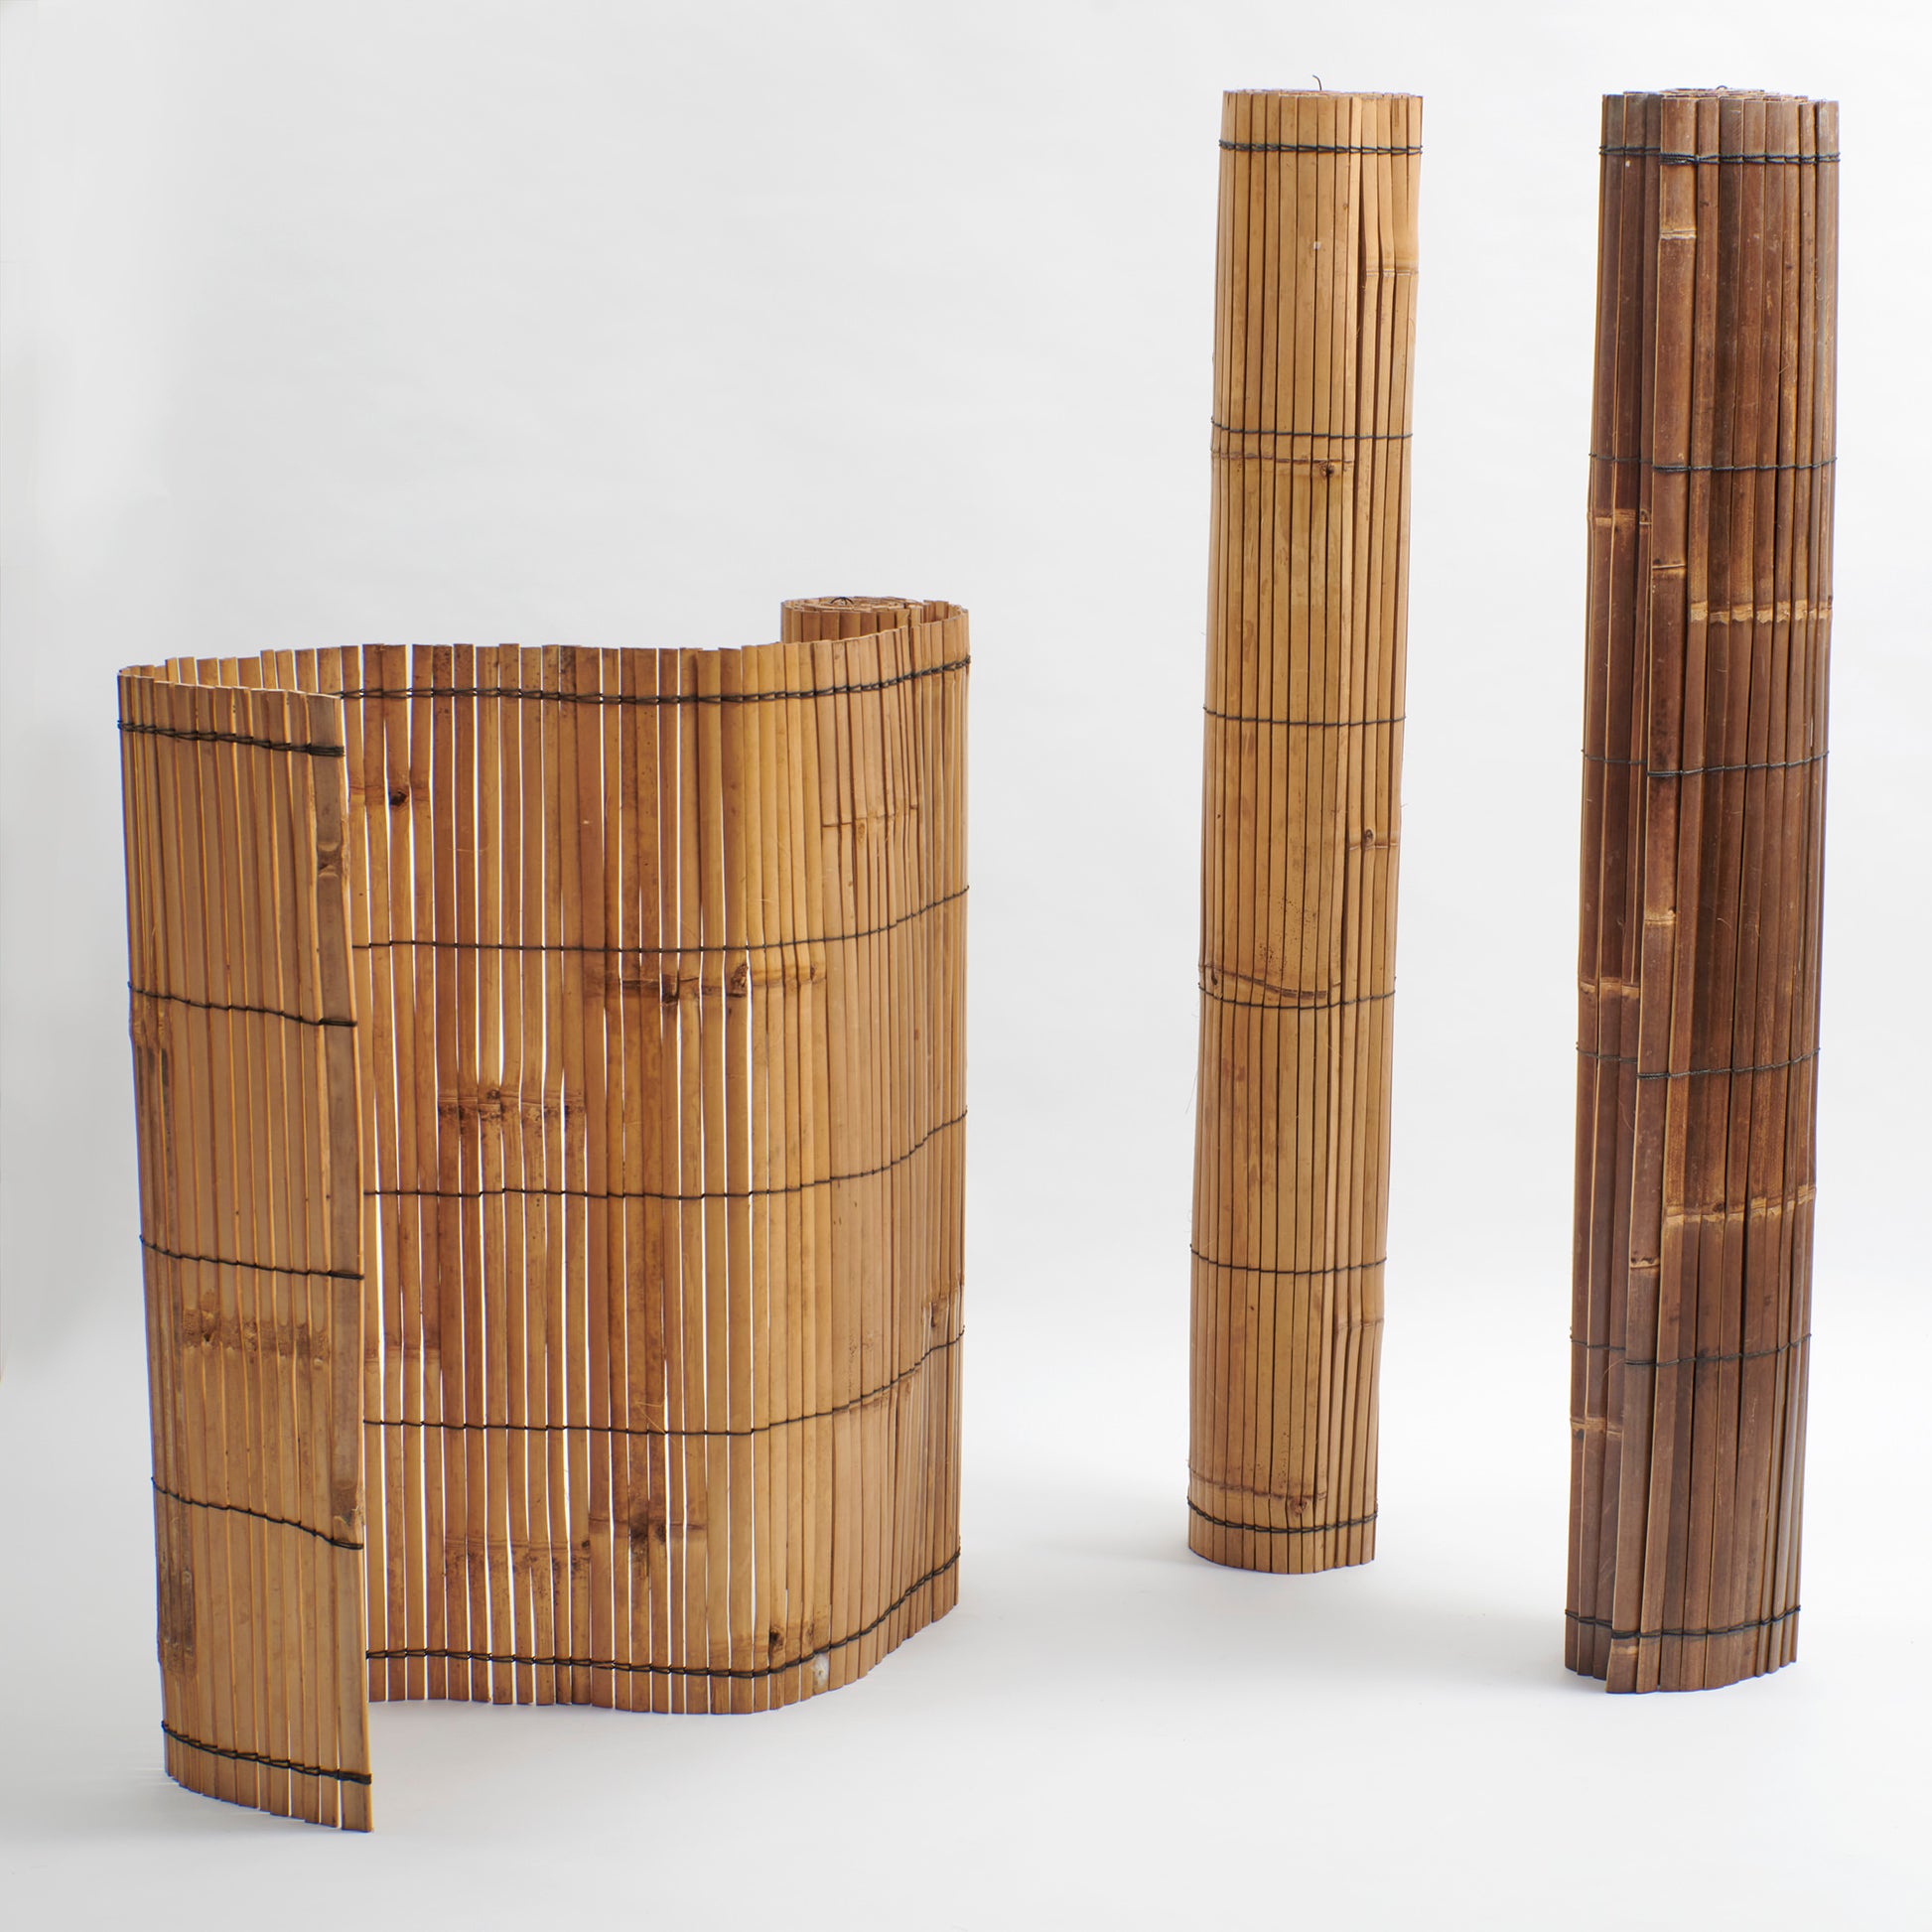 Zu einem Sichtschutz aneinander geknüpfte Bambusleisten in unterschiedlicher Größe und Farbe